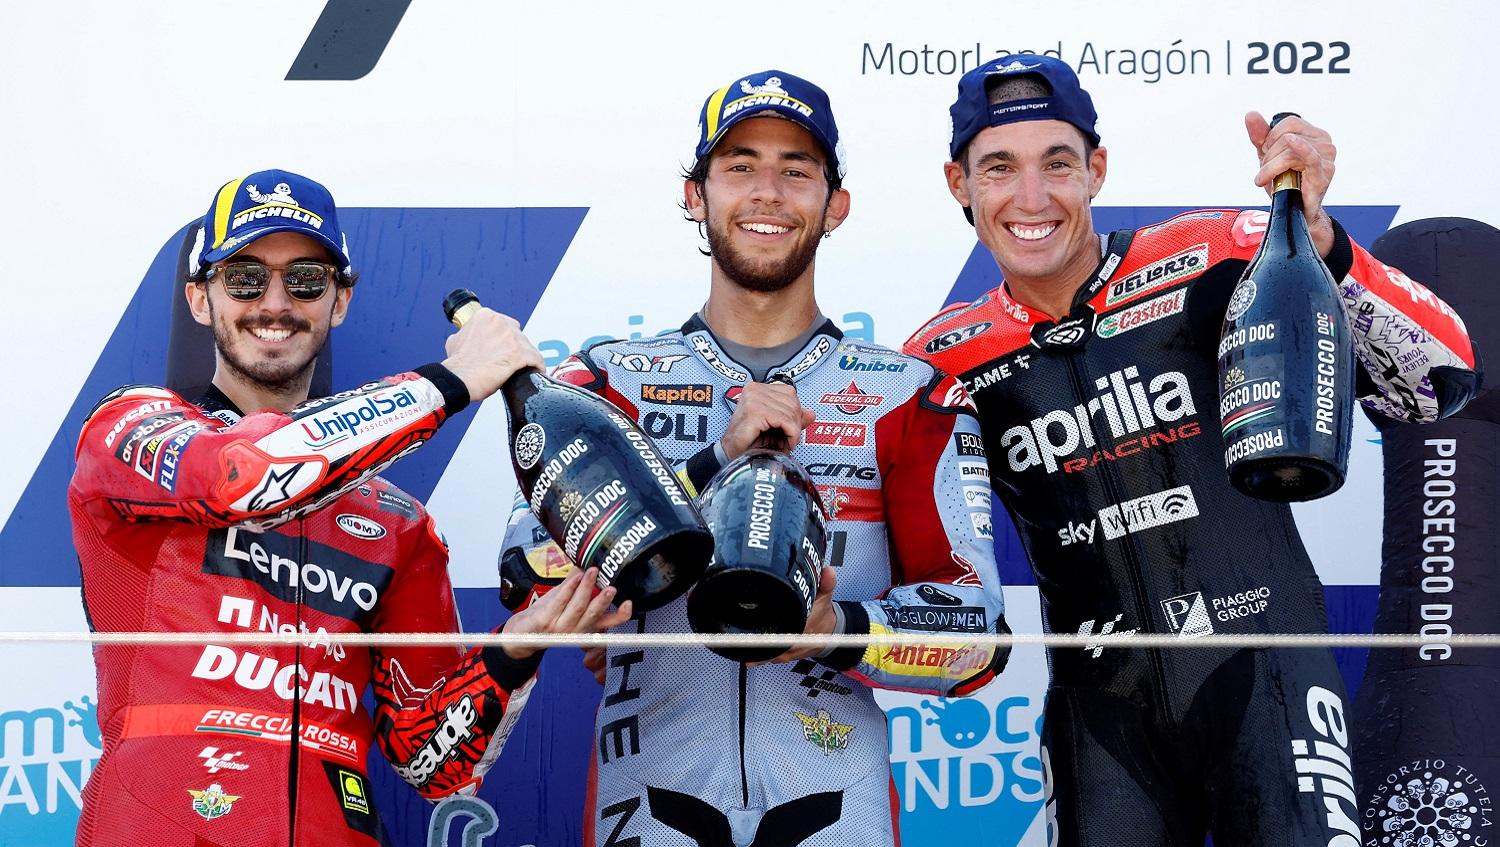 Hasil balapan MotoGP Aragon 2022, Minggu (18/09/22) di mana Enea Bastianini sukses keluar sebagai pemenang. - INDOSPORT